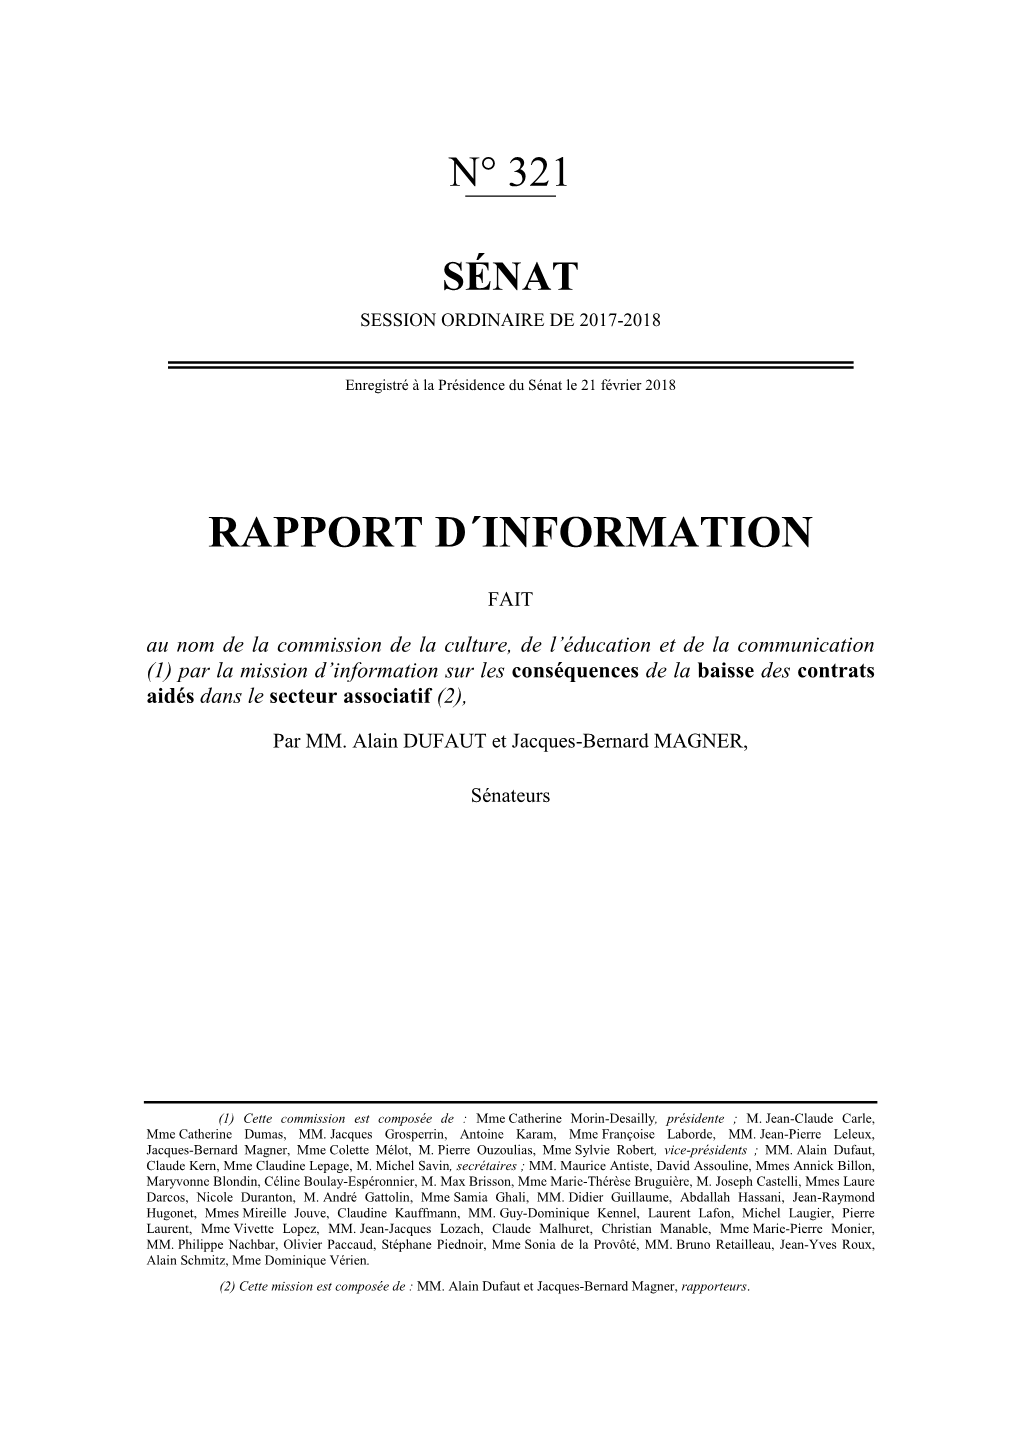 Rapport D'information Sur Les Conséquences De La Baisse Des